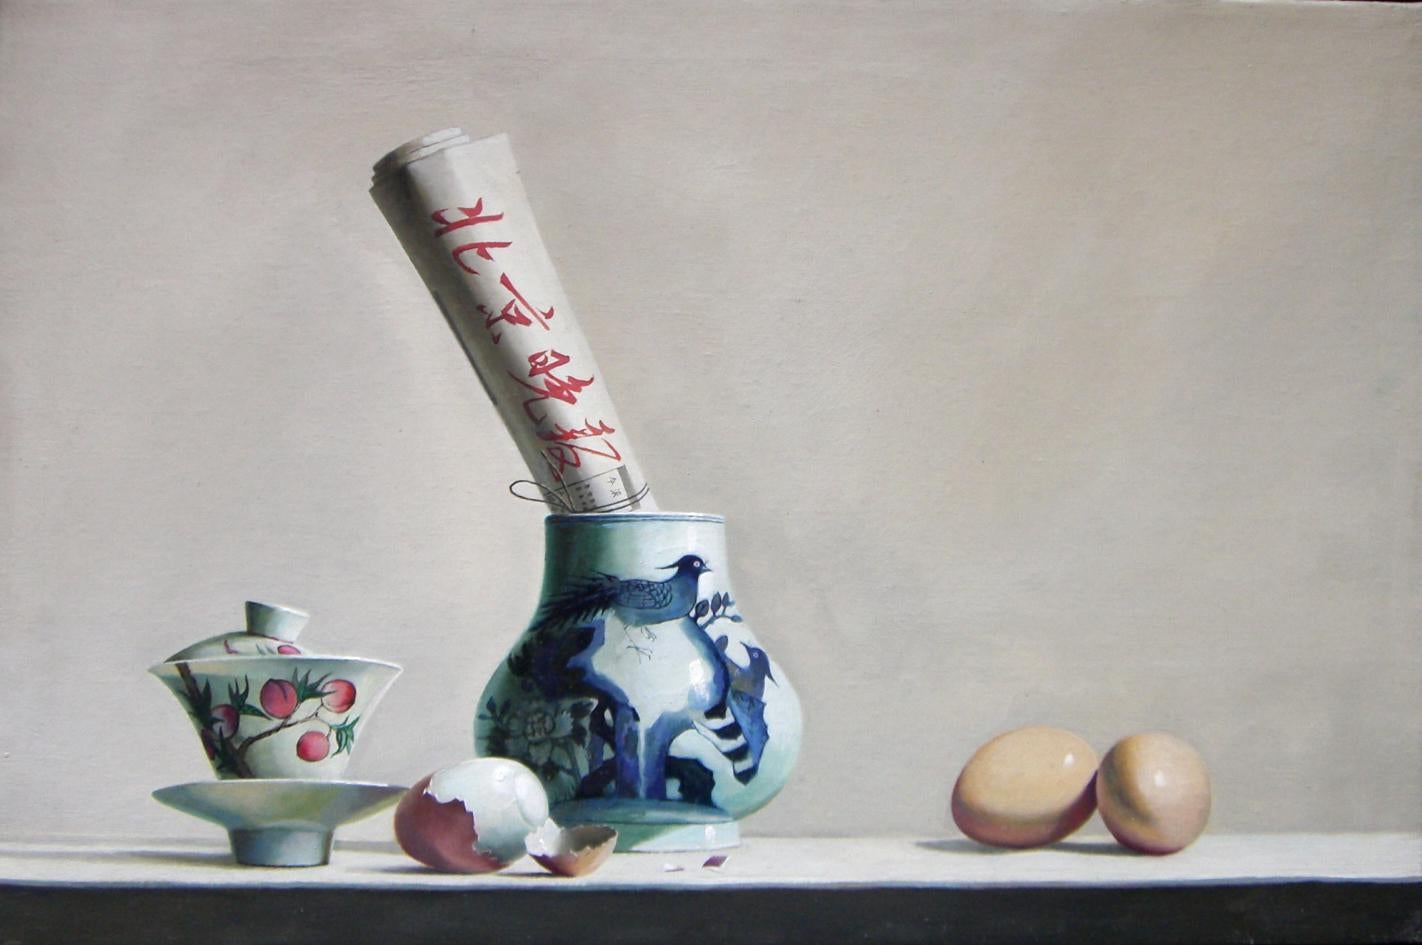 Breakfast est une huile sur toile originale réalisée par le peintre chinois Zhang Wei Guang (Mirror) en 2007.
Excellentes conditions.

Zhang Wei Guang, également appelé "miroir", est né à Helong Jang, en Chine, en 1968. Il a étudié à l'université